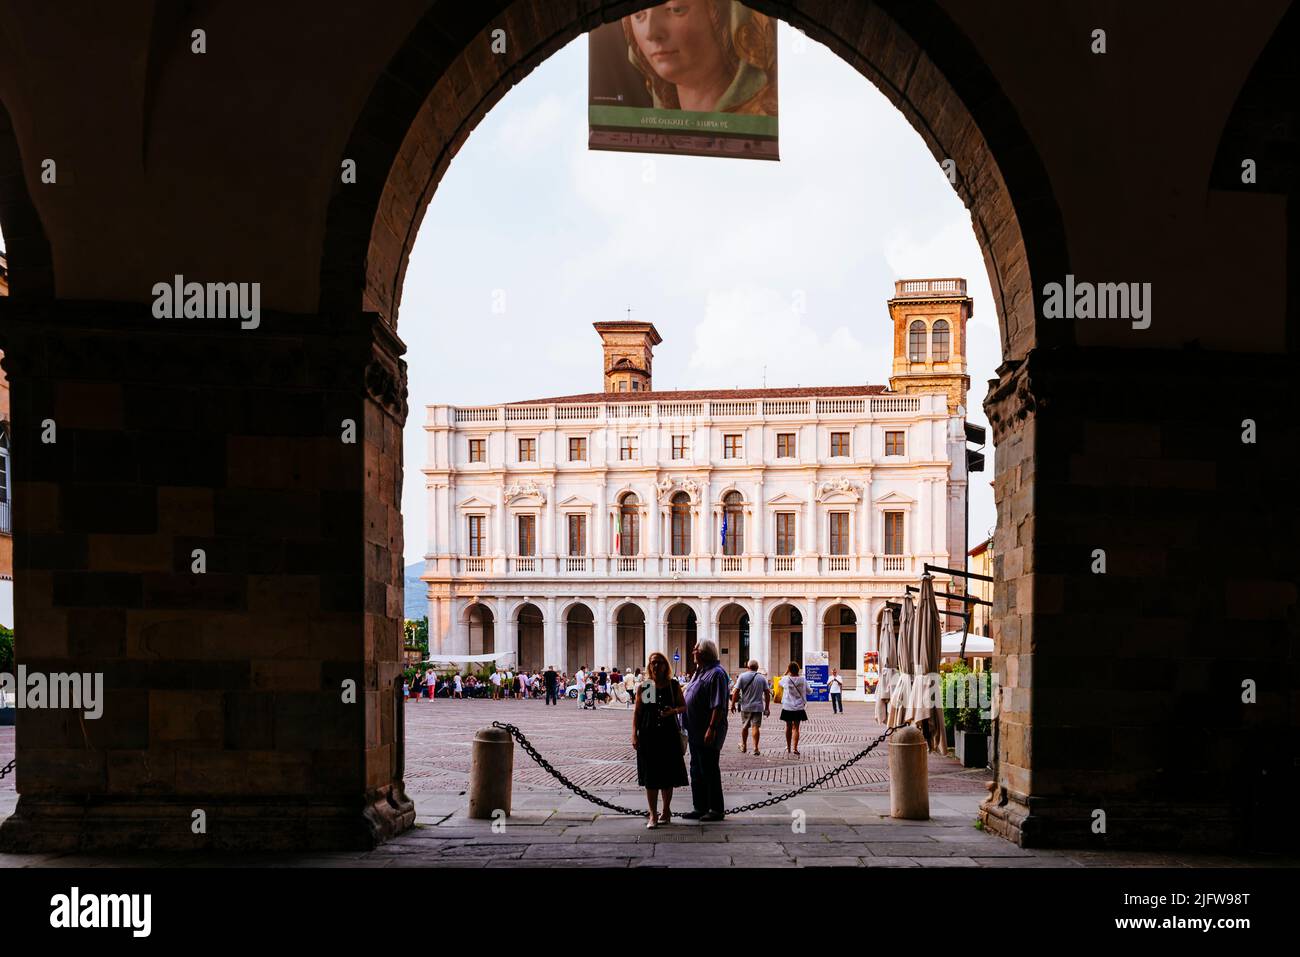 La Biblioteca civica Angelo mai vista attraverso gli archi del piano terra del Palazzo della ragione. Piazza Vecchia, Bergamo, Lombardia, Italia, E. Foto Stock